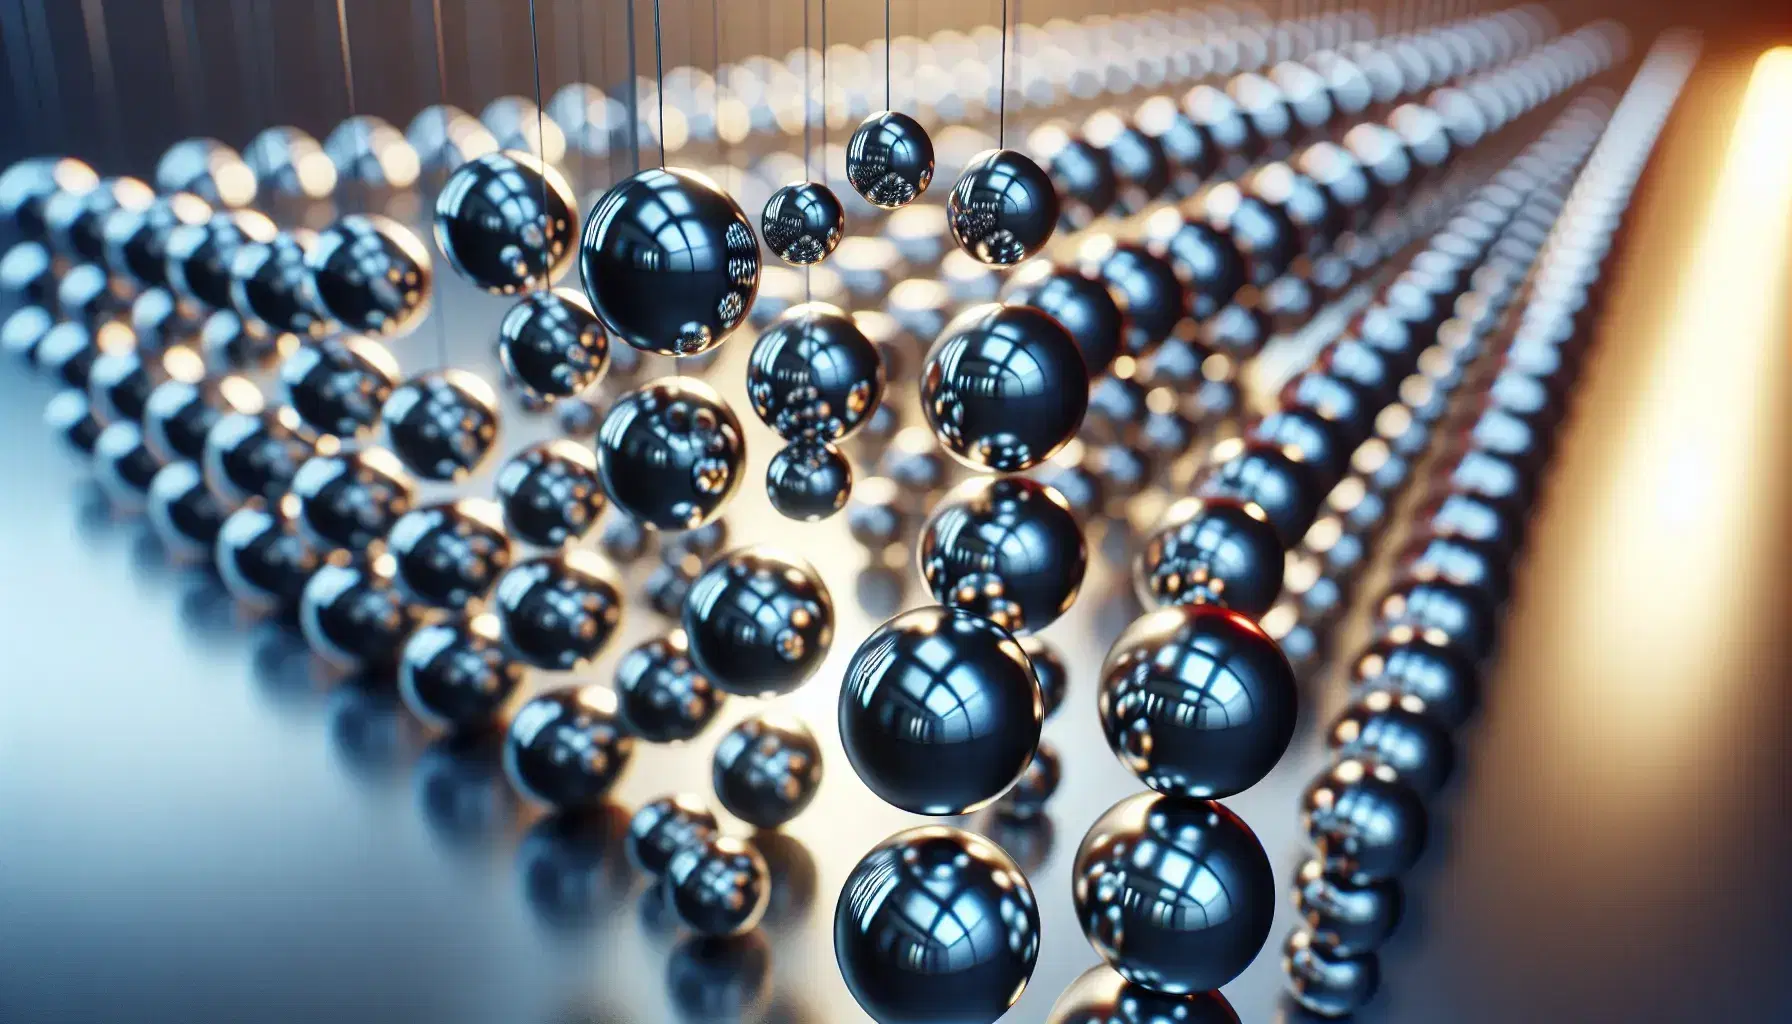 Esferas metálicas suspendidas en secuencia con reflejos brillantes en un fondo desenfocado, evocando energía y potencial.